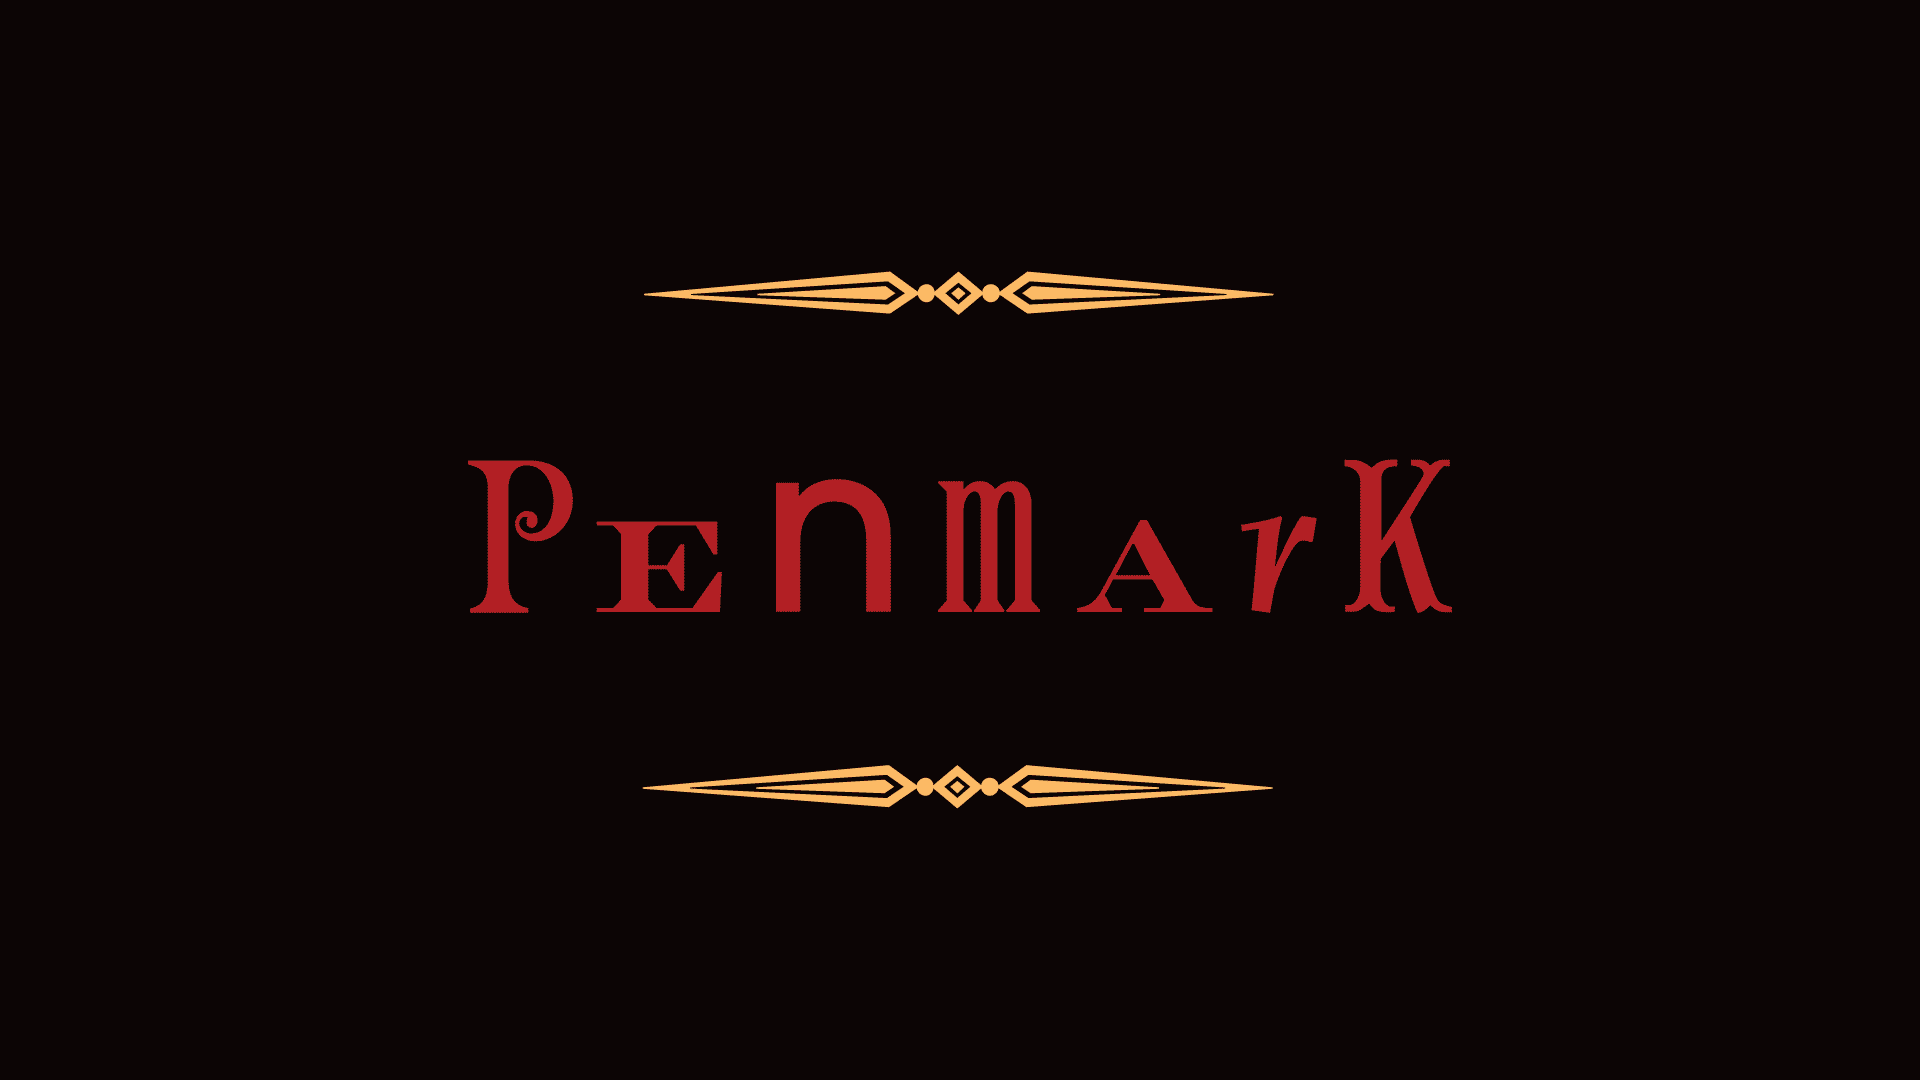 Penmark logo on black background